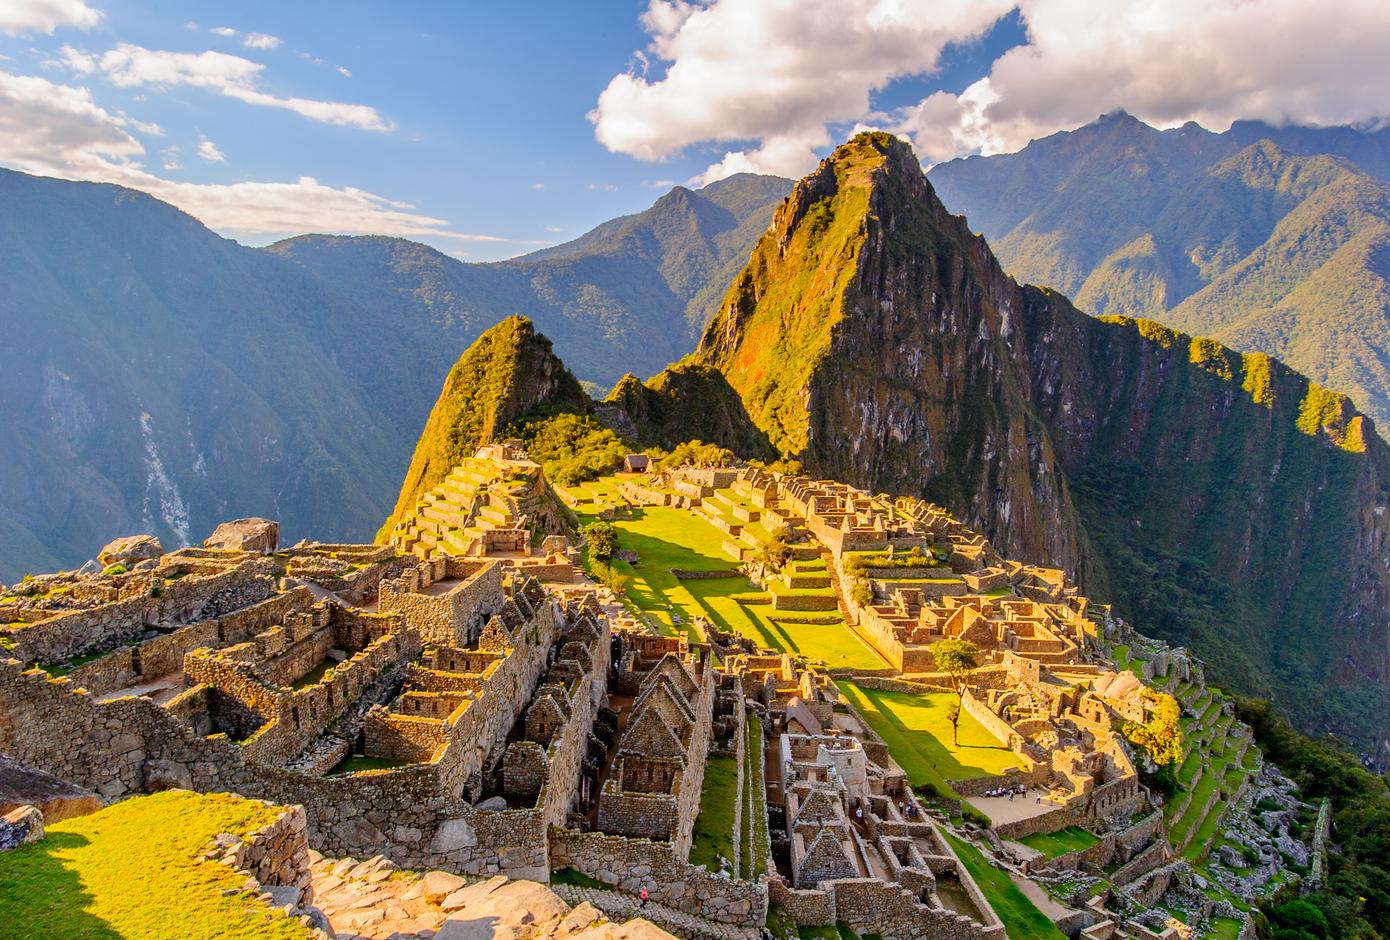 View of Machu Picchu during a sunny day, in Peru.